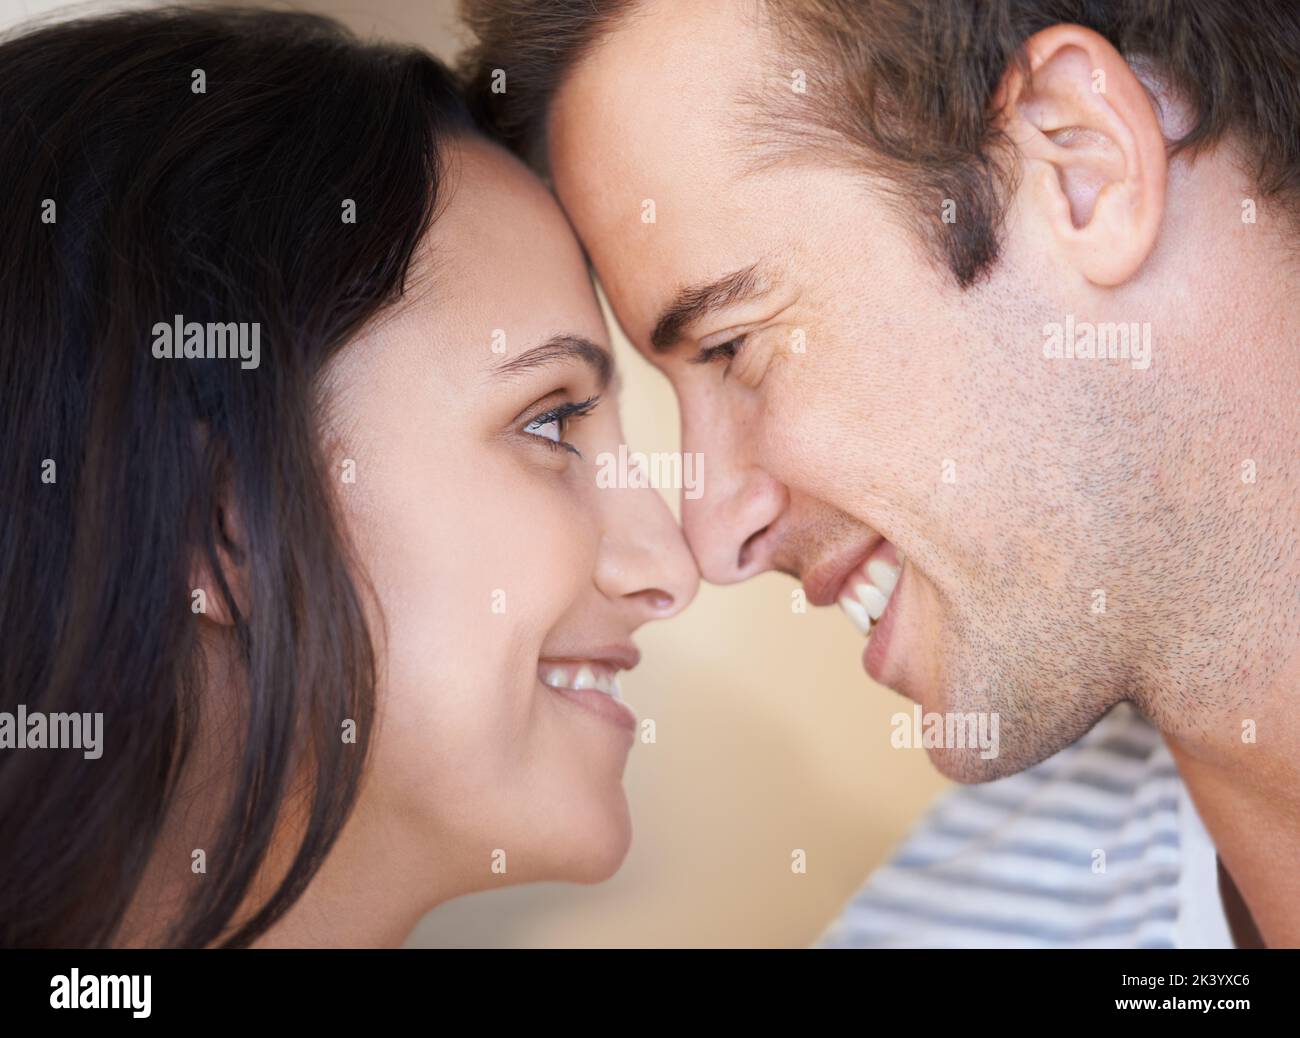 Bene sia insieme per sempre. Una giovane coppia amorevole sorridente insieme. Foto Stock